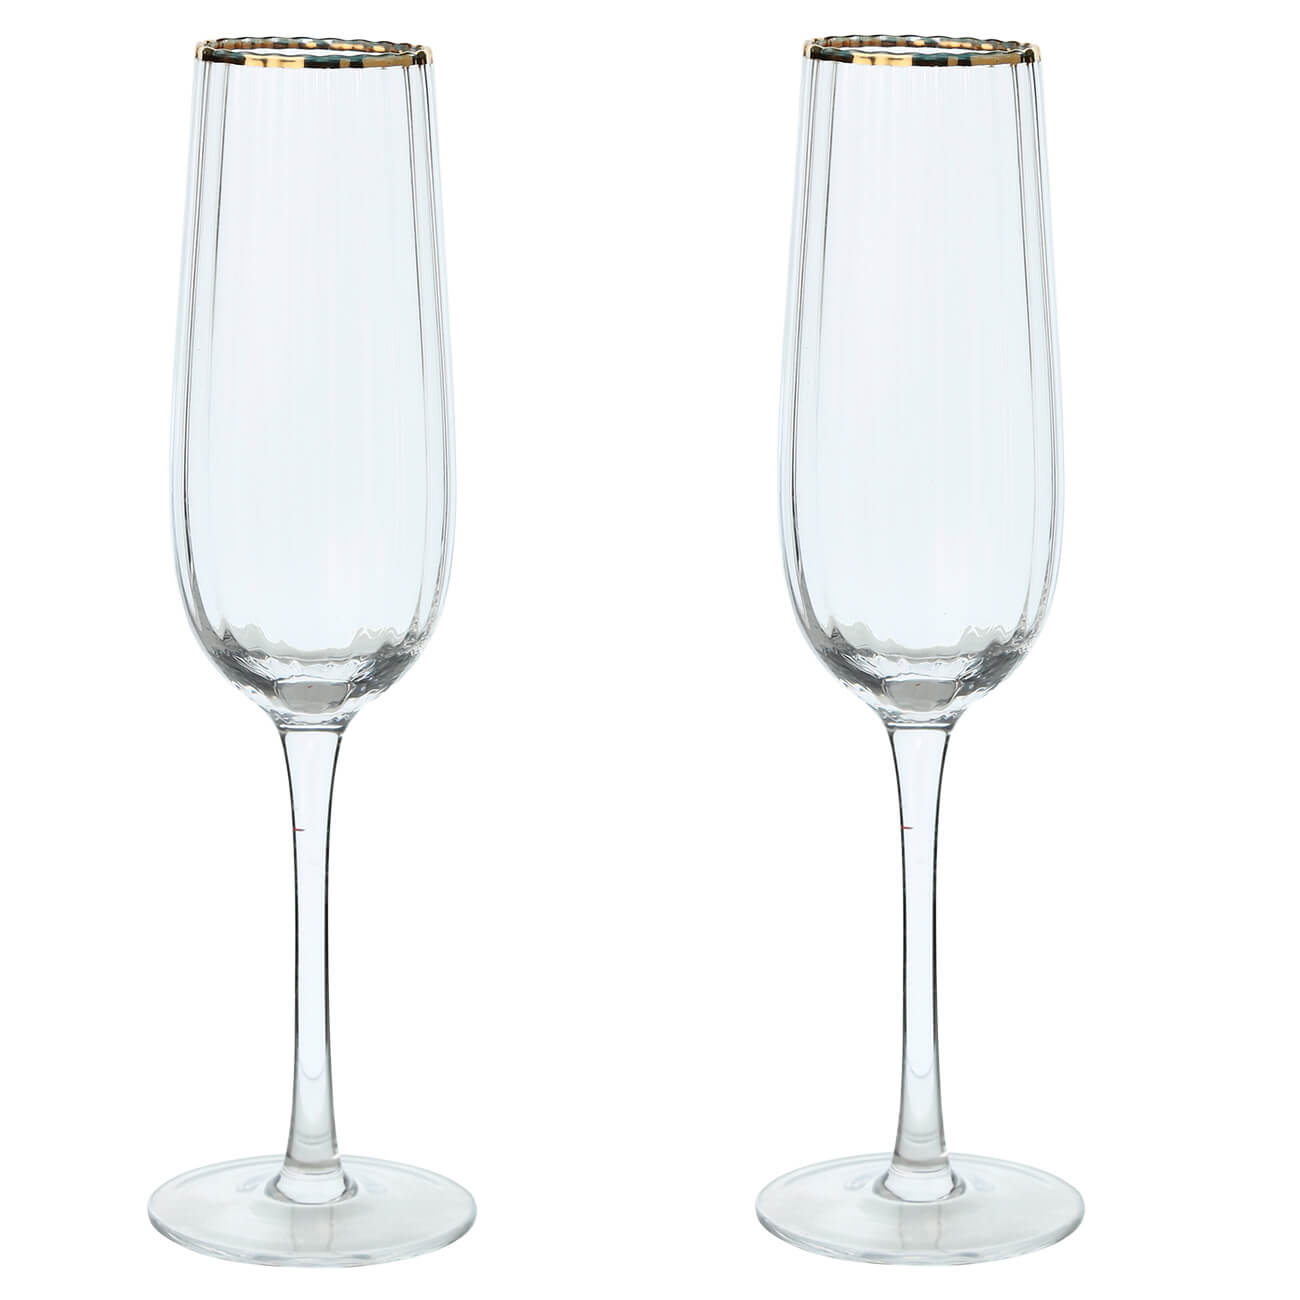 Бокал для шампанского, 275 мл, 2 шт, стекло, с золотистым кантом, Lombardy R Gold тарелка десертная 15 см стекло с золотистым кантом brenta gold